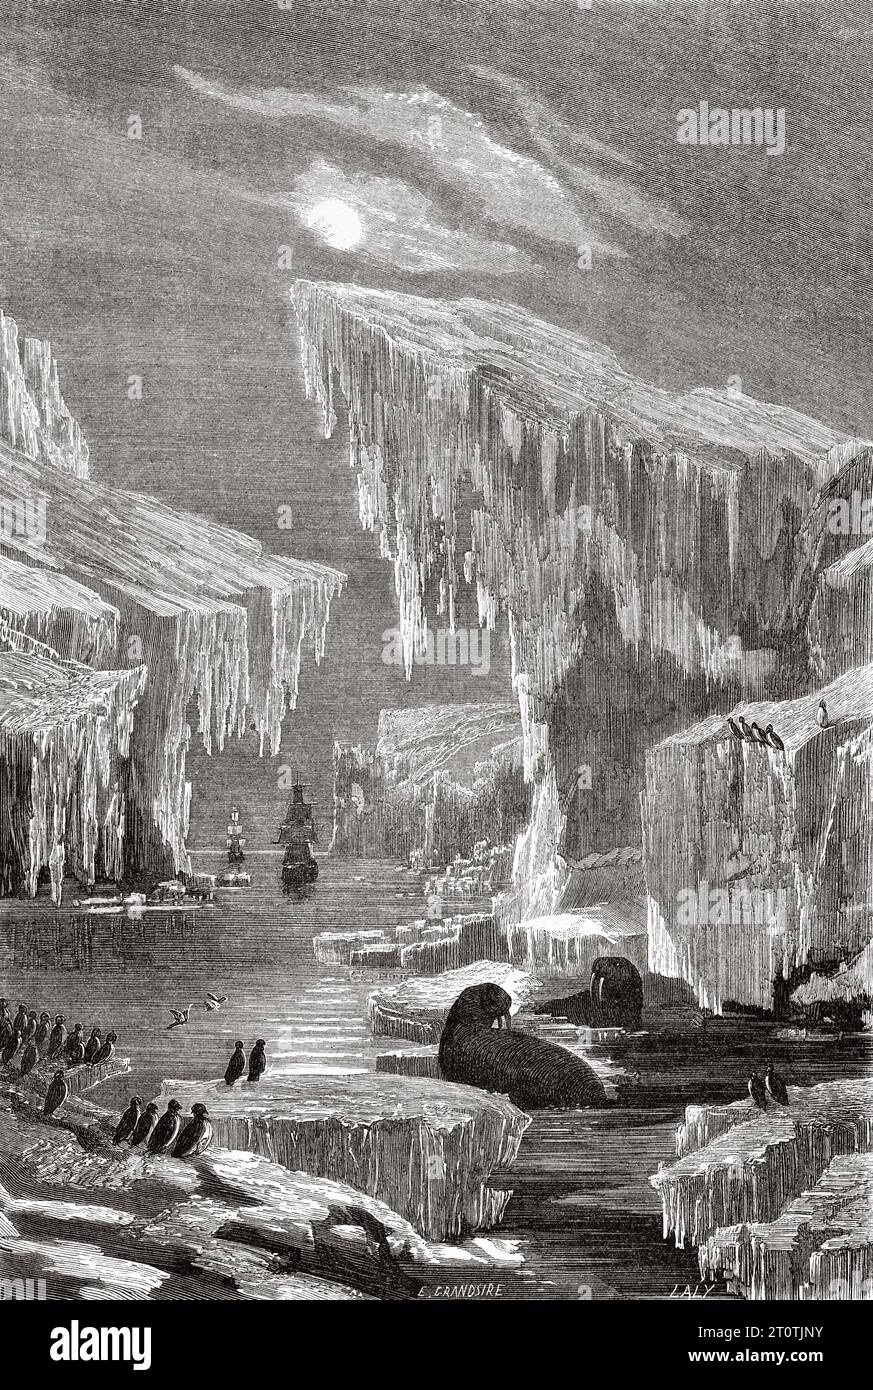 HMS Erebus et HMS Terror au milieu des glaces. Histoire de l'expédition perdue de Franklin dans l'Arctique (1786-1847) gravure ancienne du 19e siècle du Tour du monde 1860 Banque D'Images